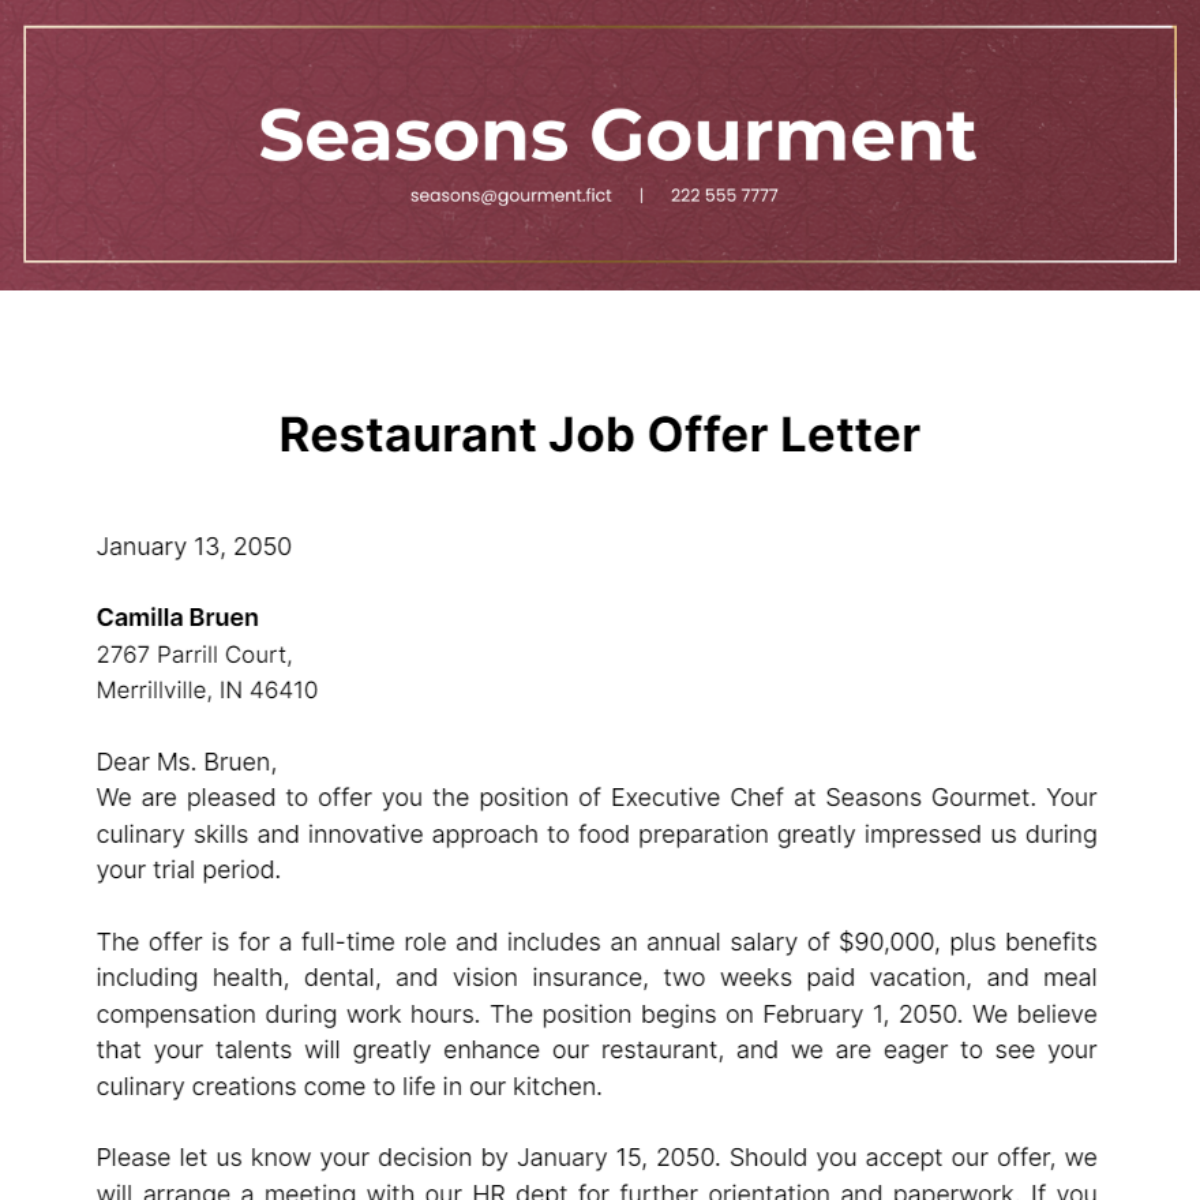 Restaurant Job Offer Letter Template